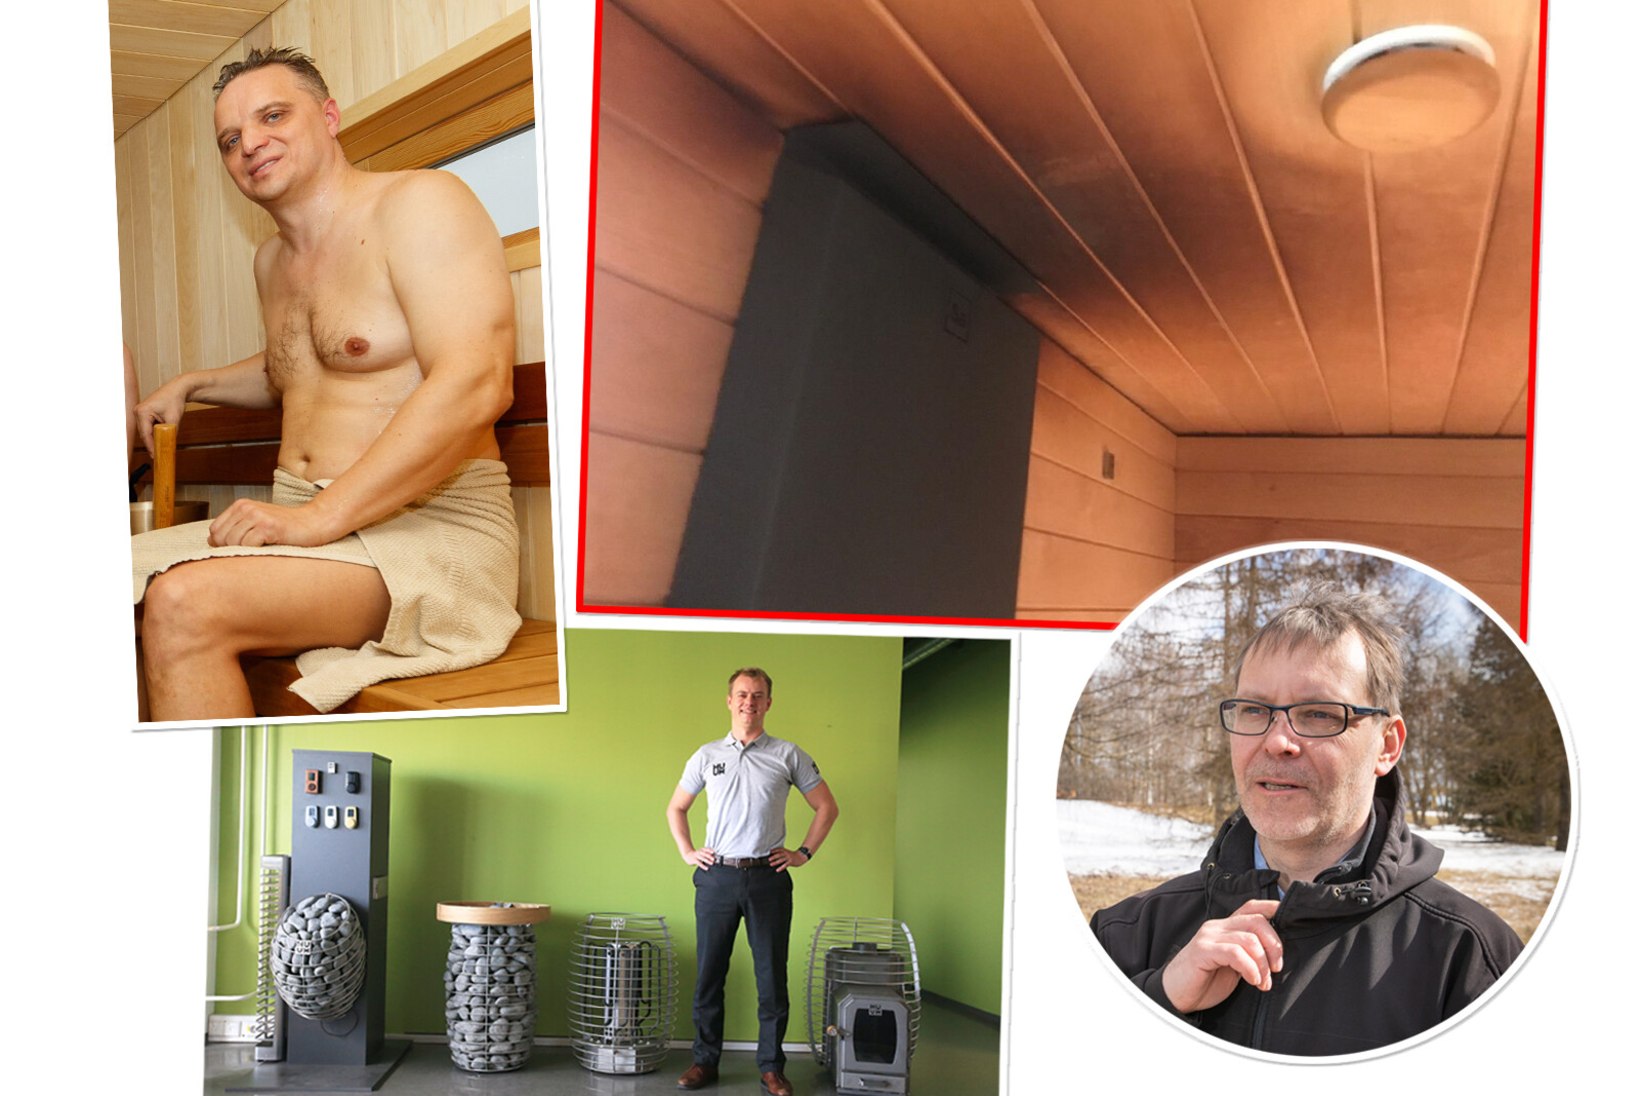 LÄHEB TULISEKS! Eesti saunamaailma staarid kütavad teineteisel kerise kuumaks! Kuidas pottsepast sai ärimängude ettur?